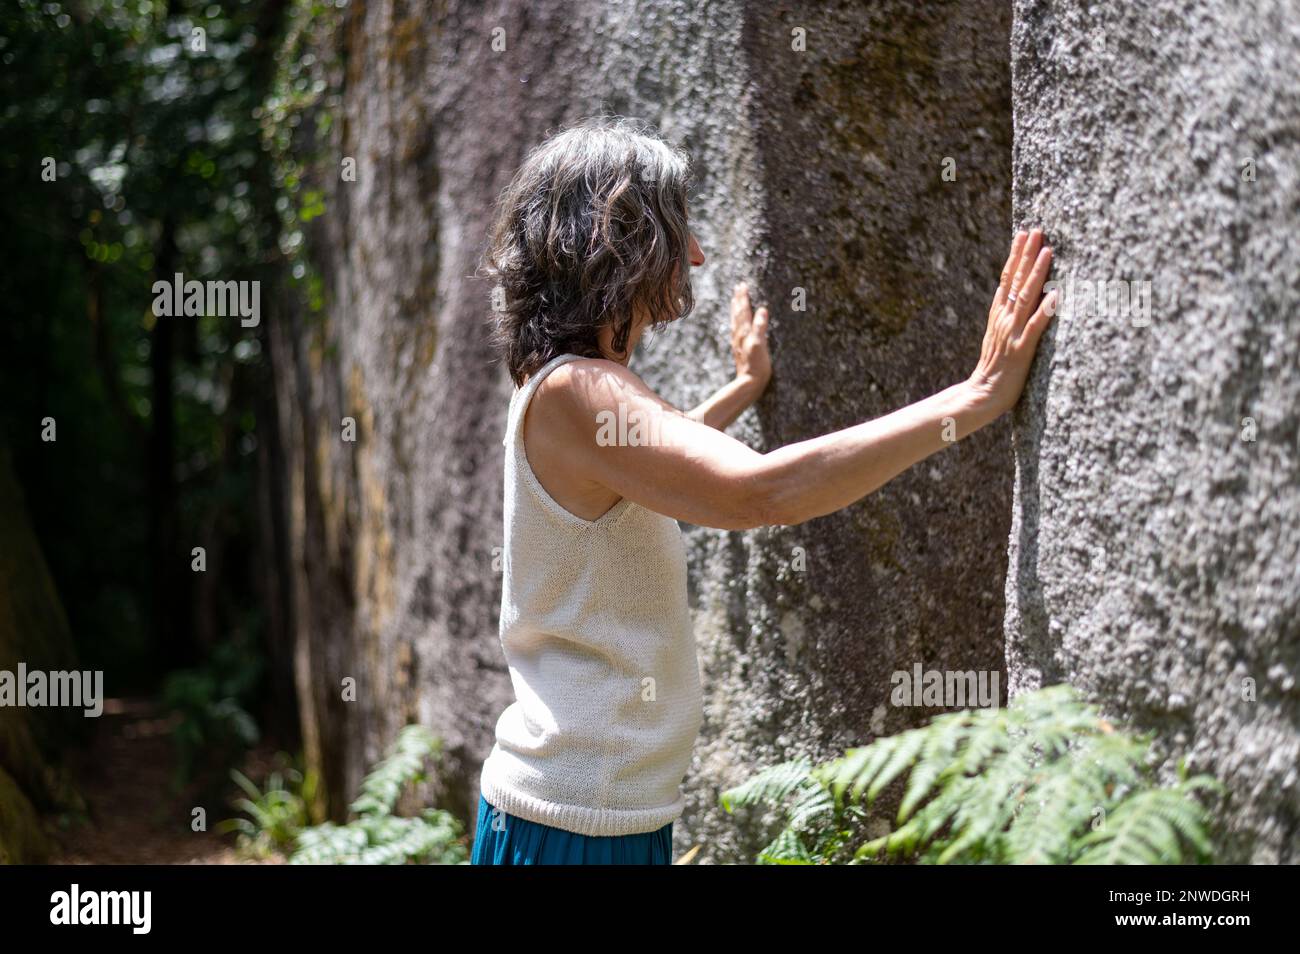 Femme énergéticienne qui ressent l'énergie des gros rochers de granit en posant ses mains dessus, forêt de Huelgoat, Bretagne, Frankreich Stockfoto